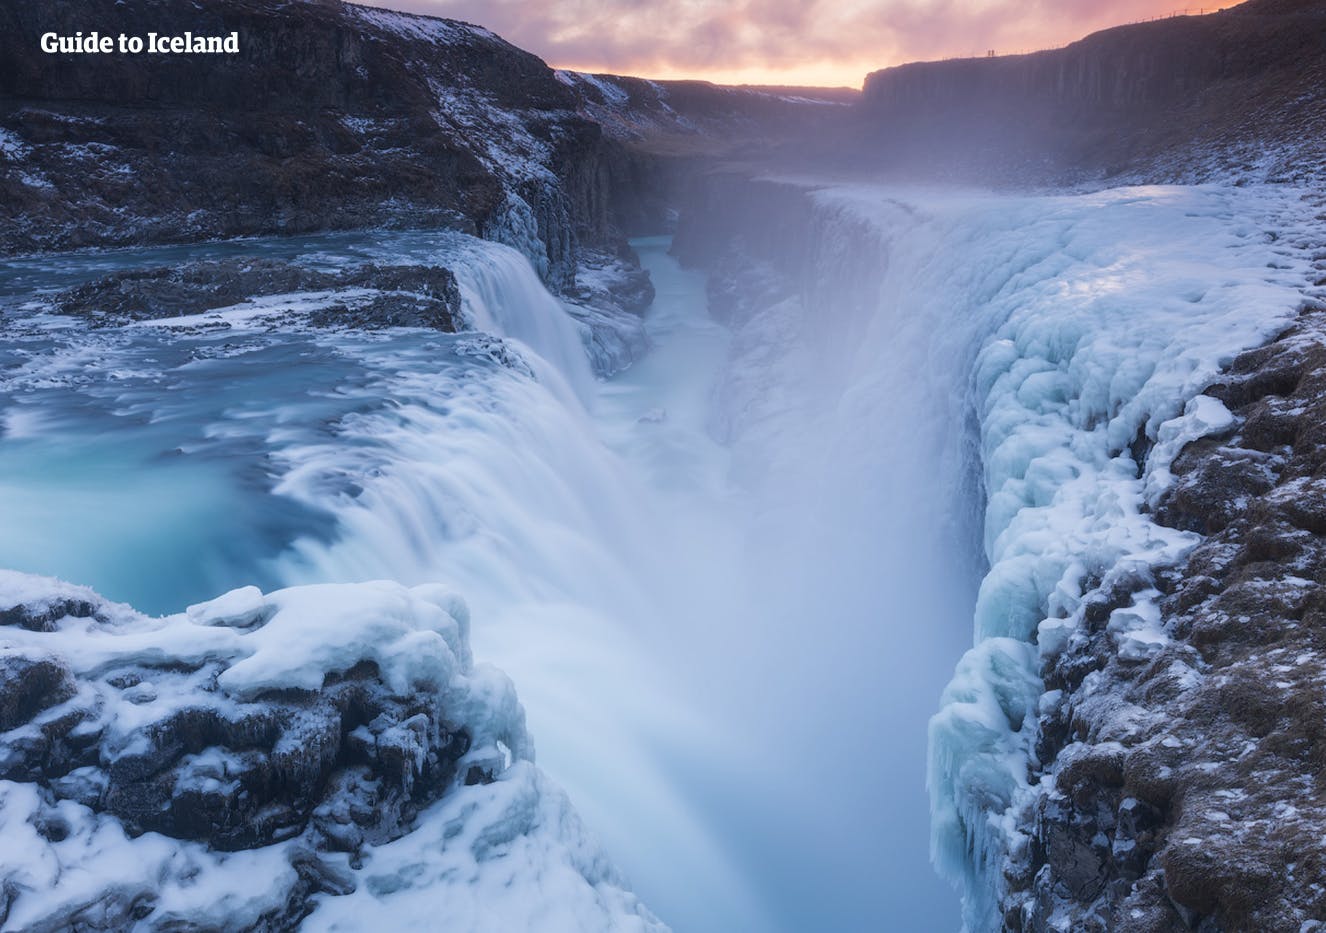 La cascade de Gullfoss en hiver est entourée de glace et de neige, mais la rivière Hvíta continue de couler avec force.